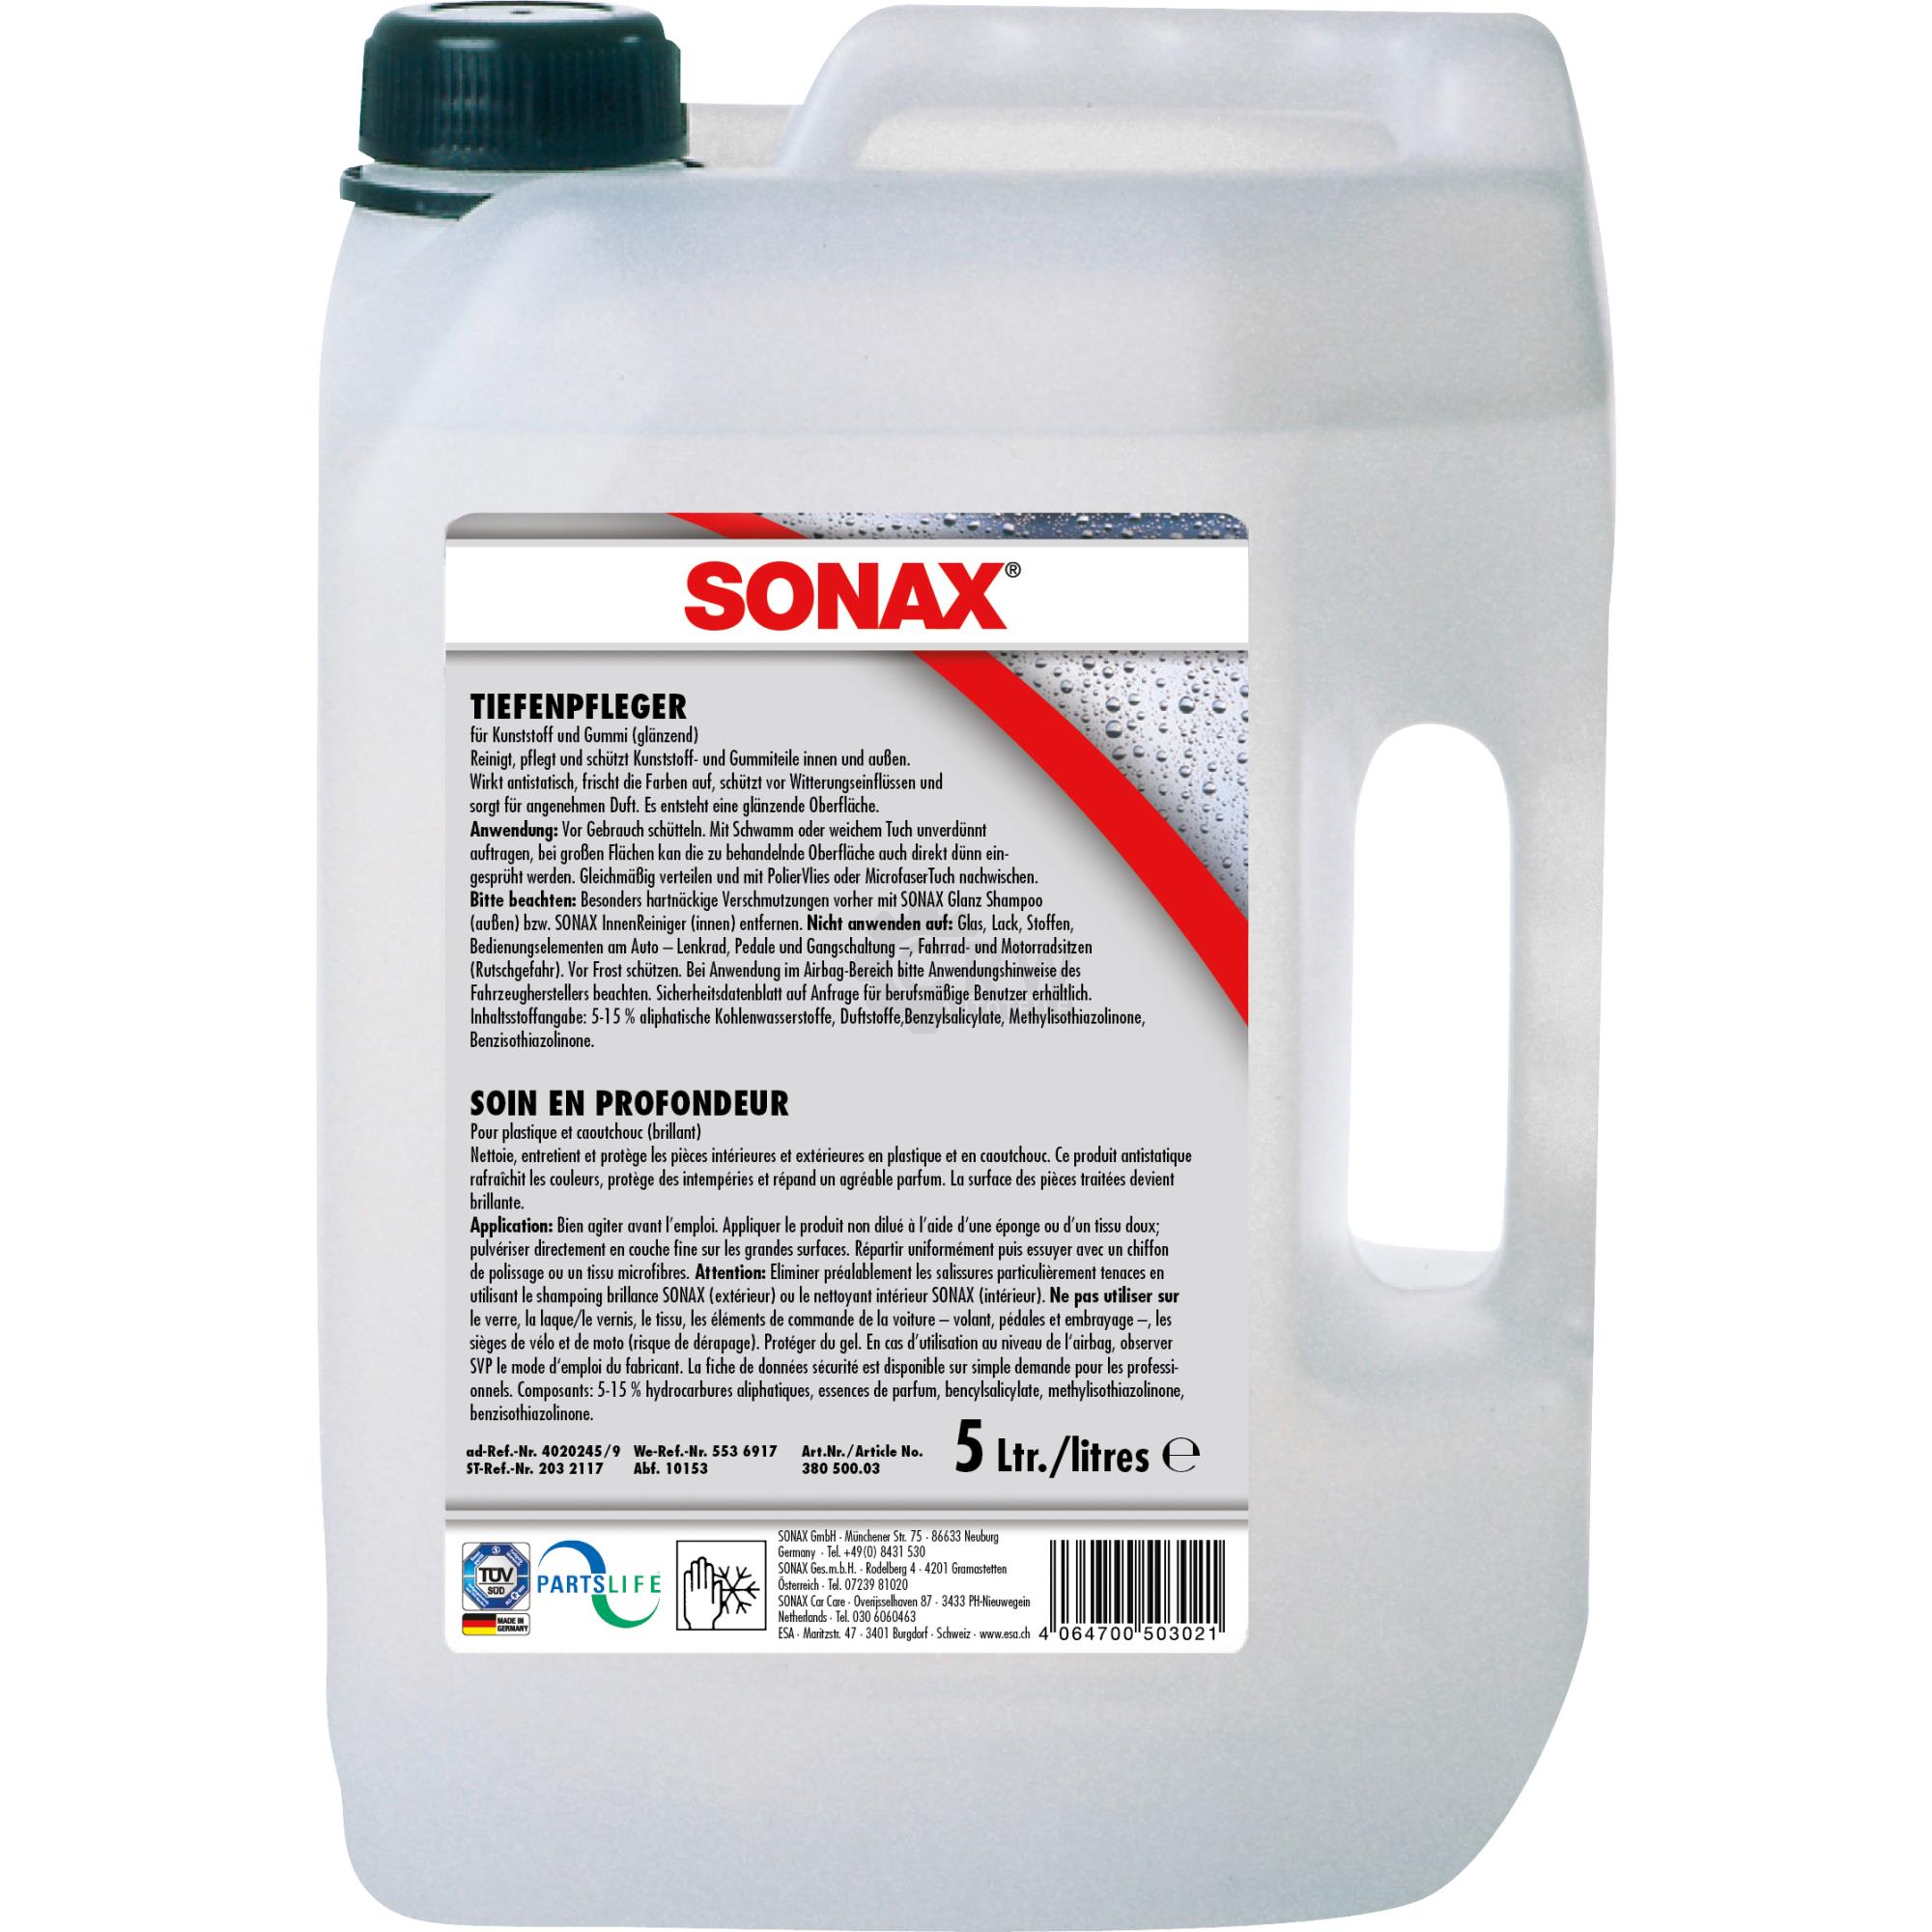 SONAX 03805000 TiefenPfleger Glänzend für Kunststoff und Gummi 5 Liter